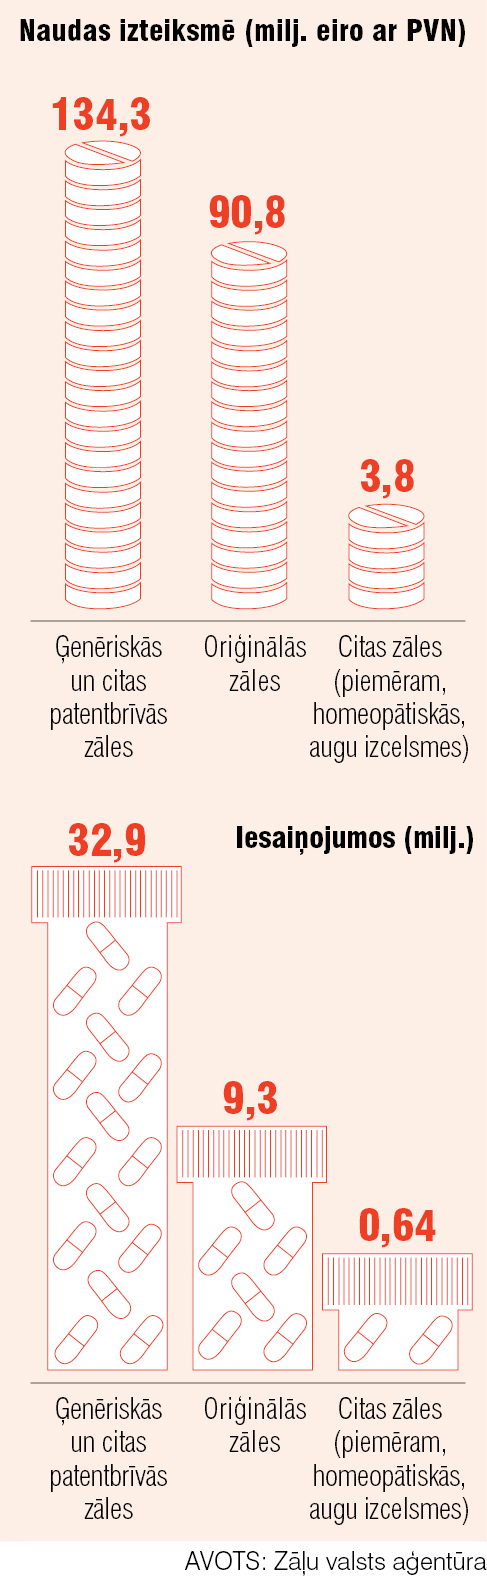 Zāļu patēriņš Latvijā 2015. gadā